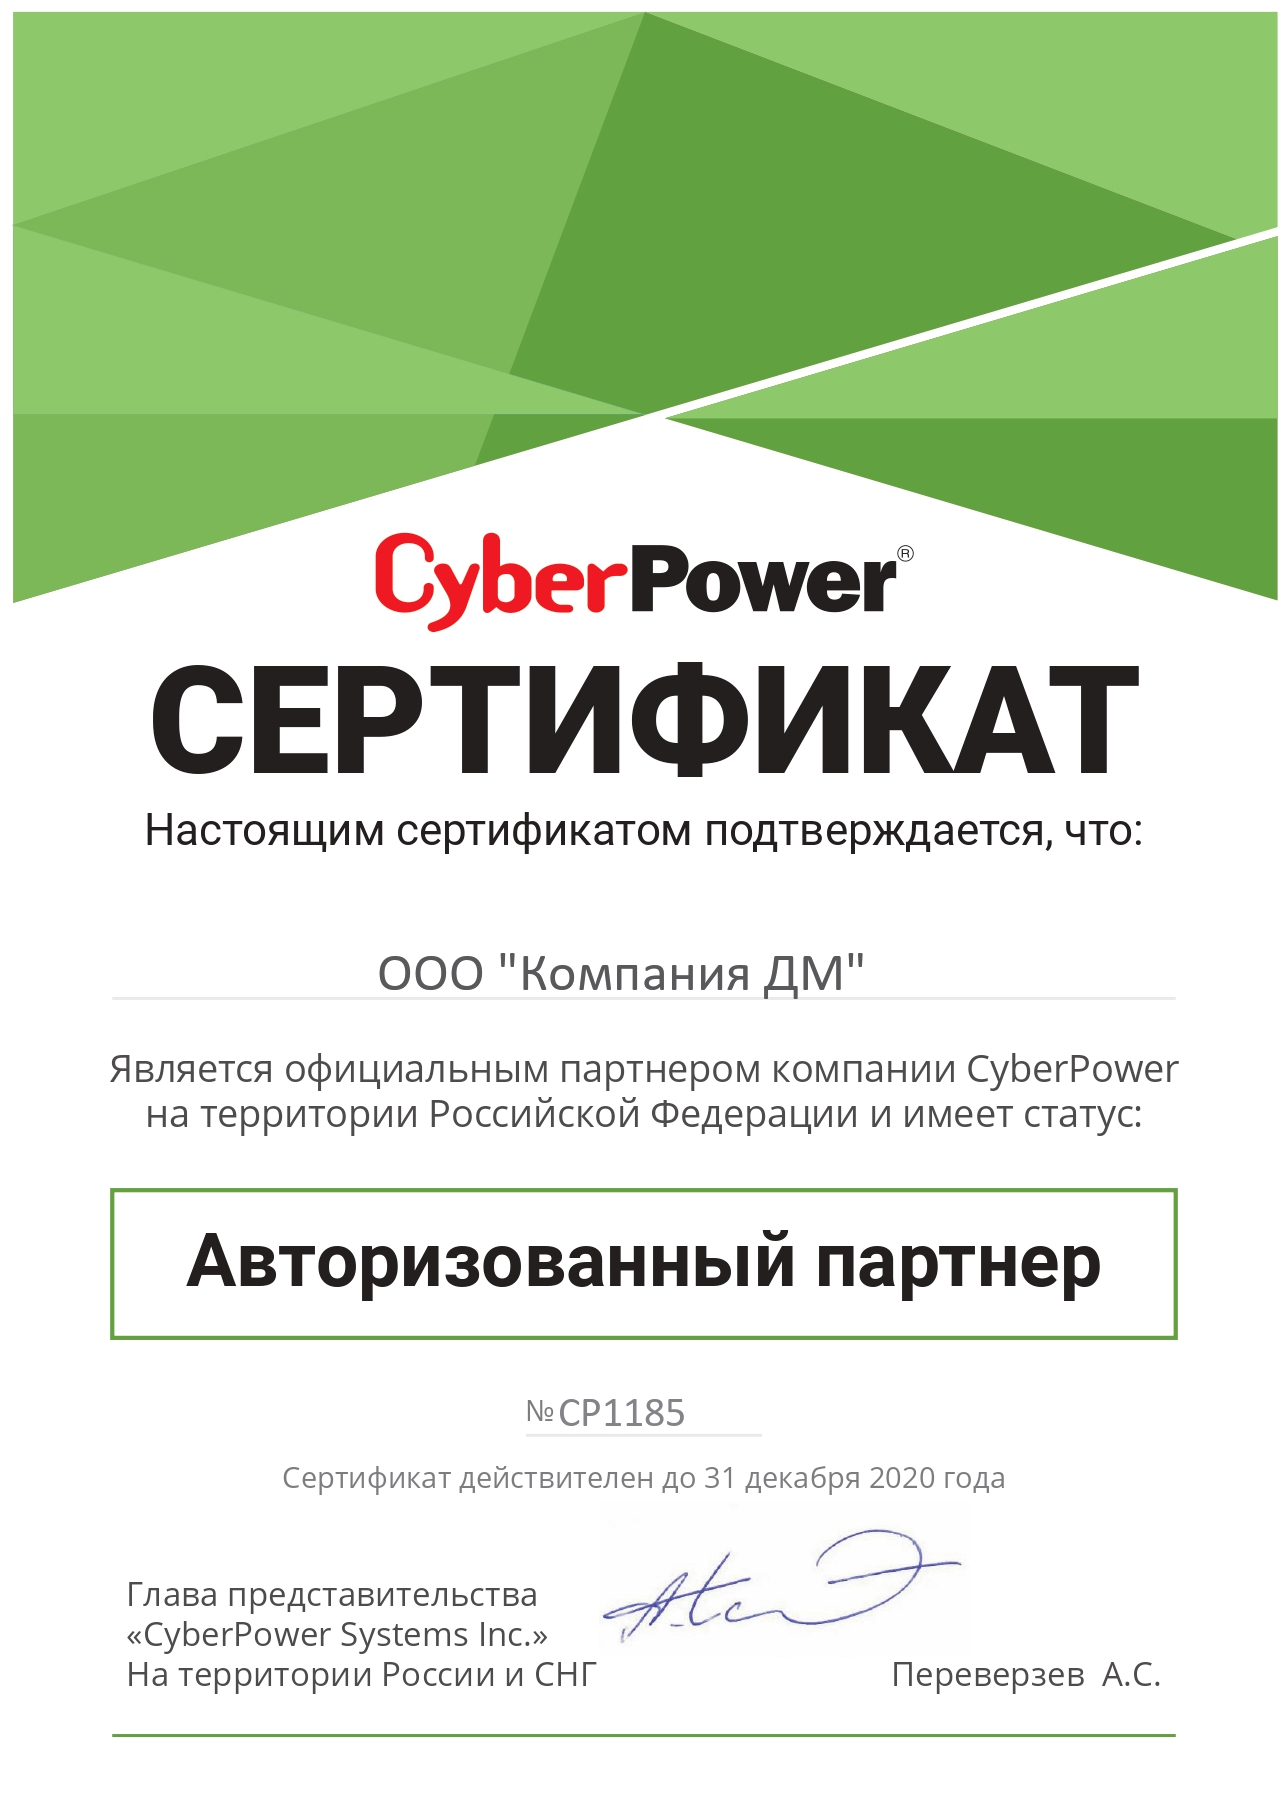 CyberPower сертификат авторизованного партнера